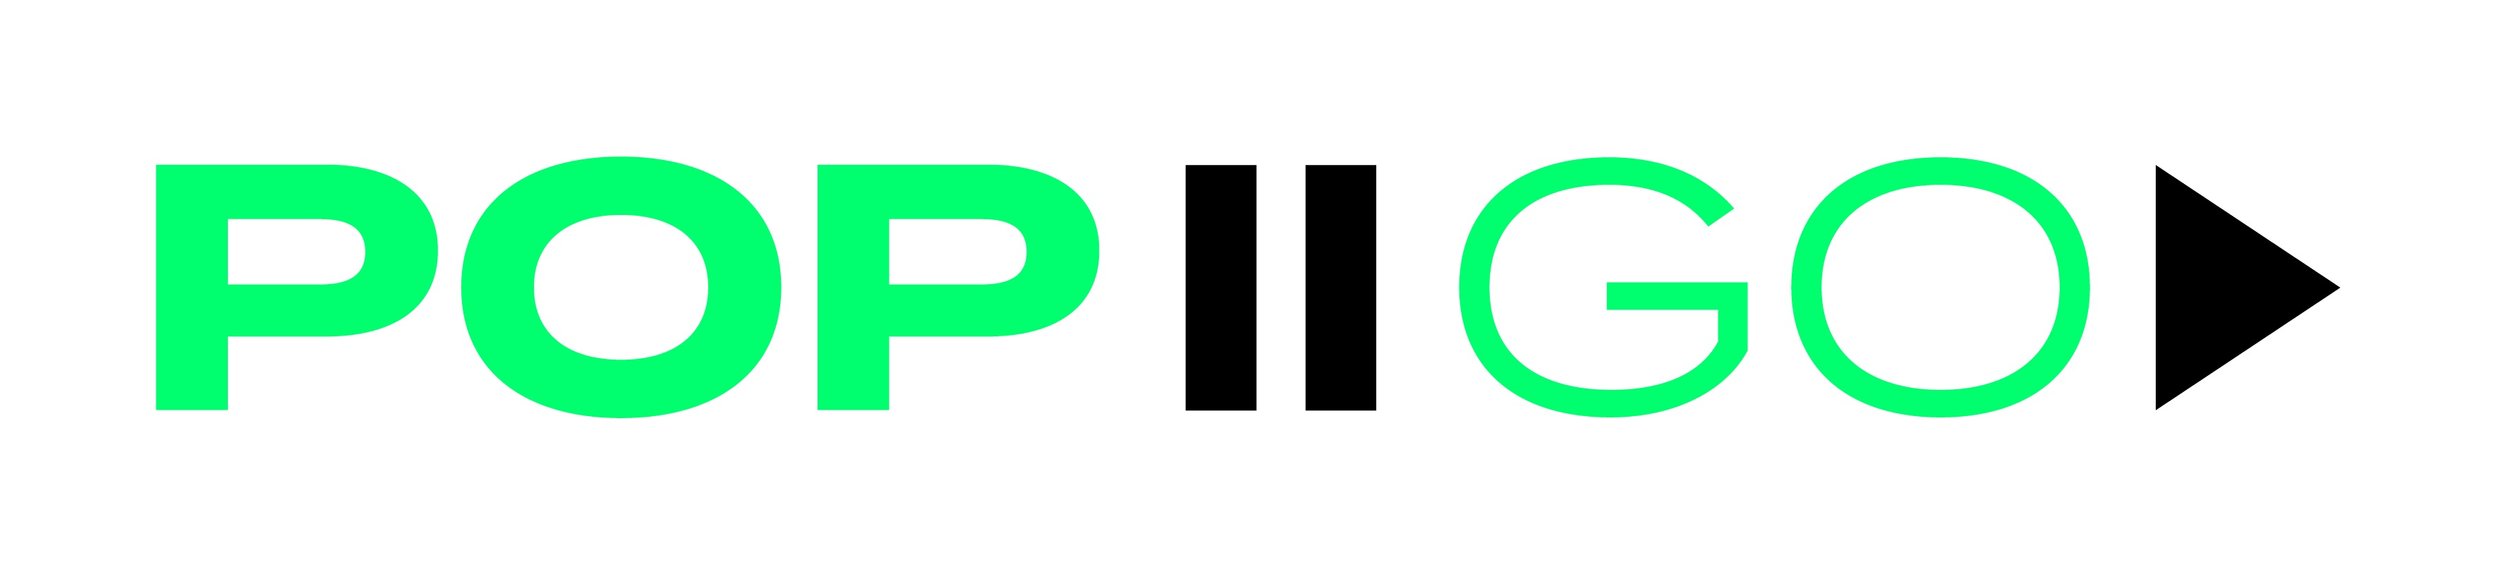 PopToGo_Logo.jpg